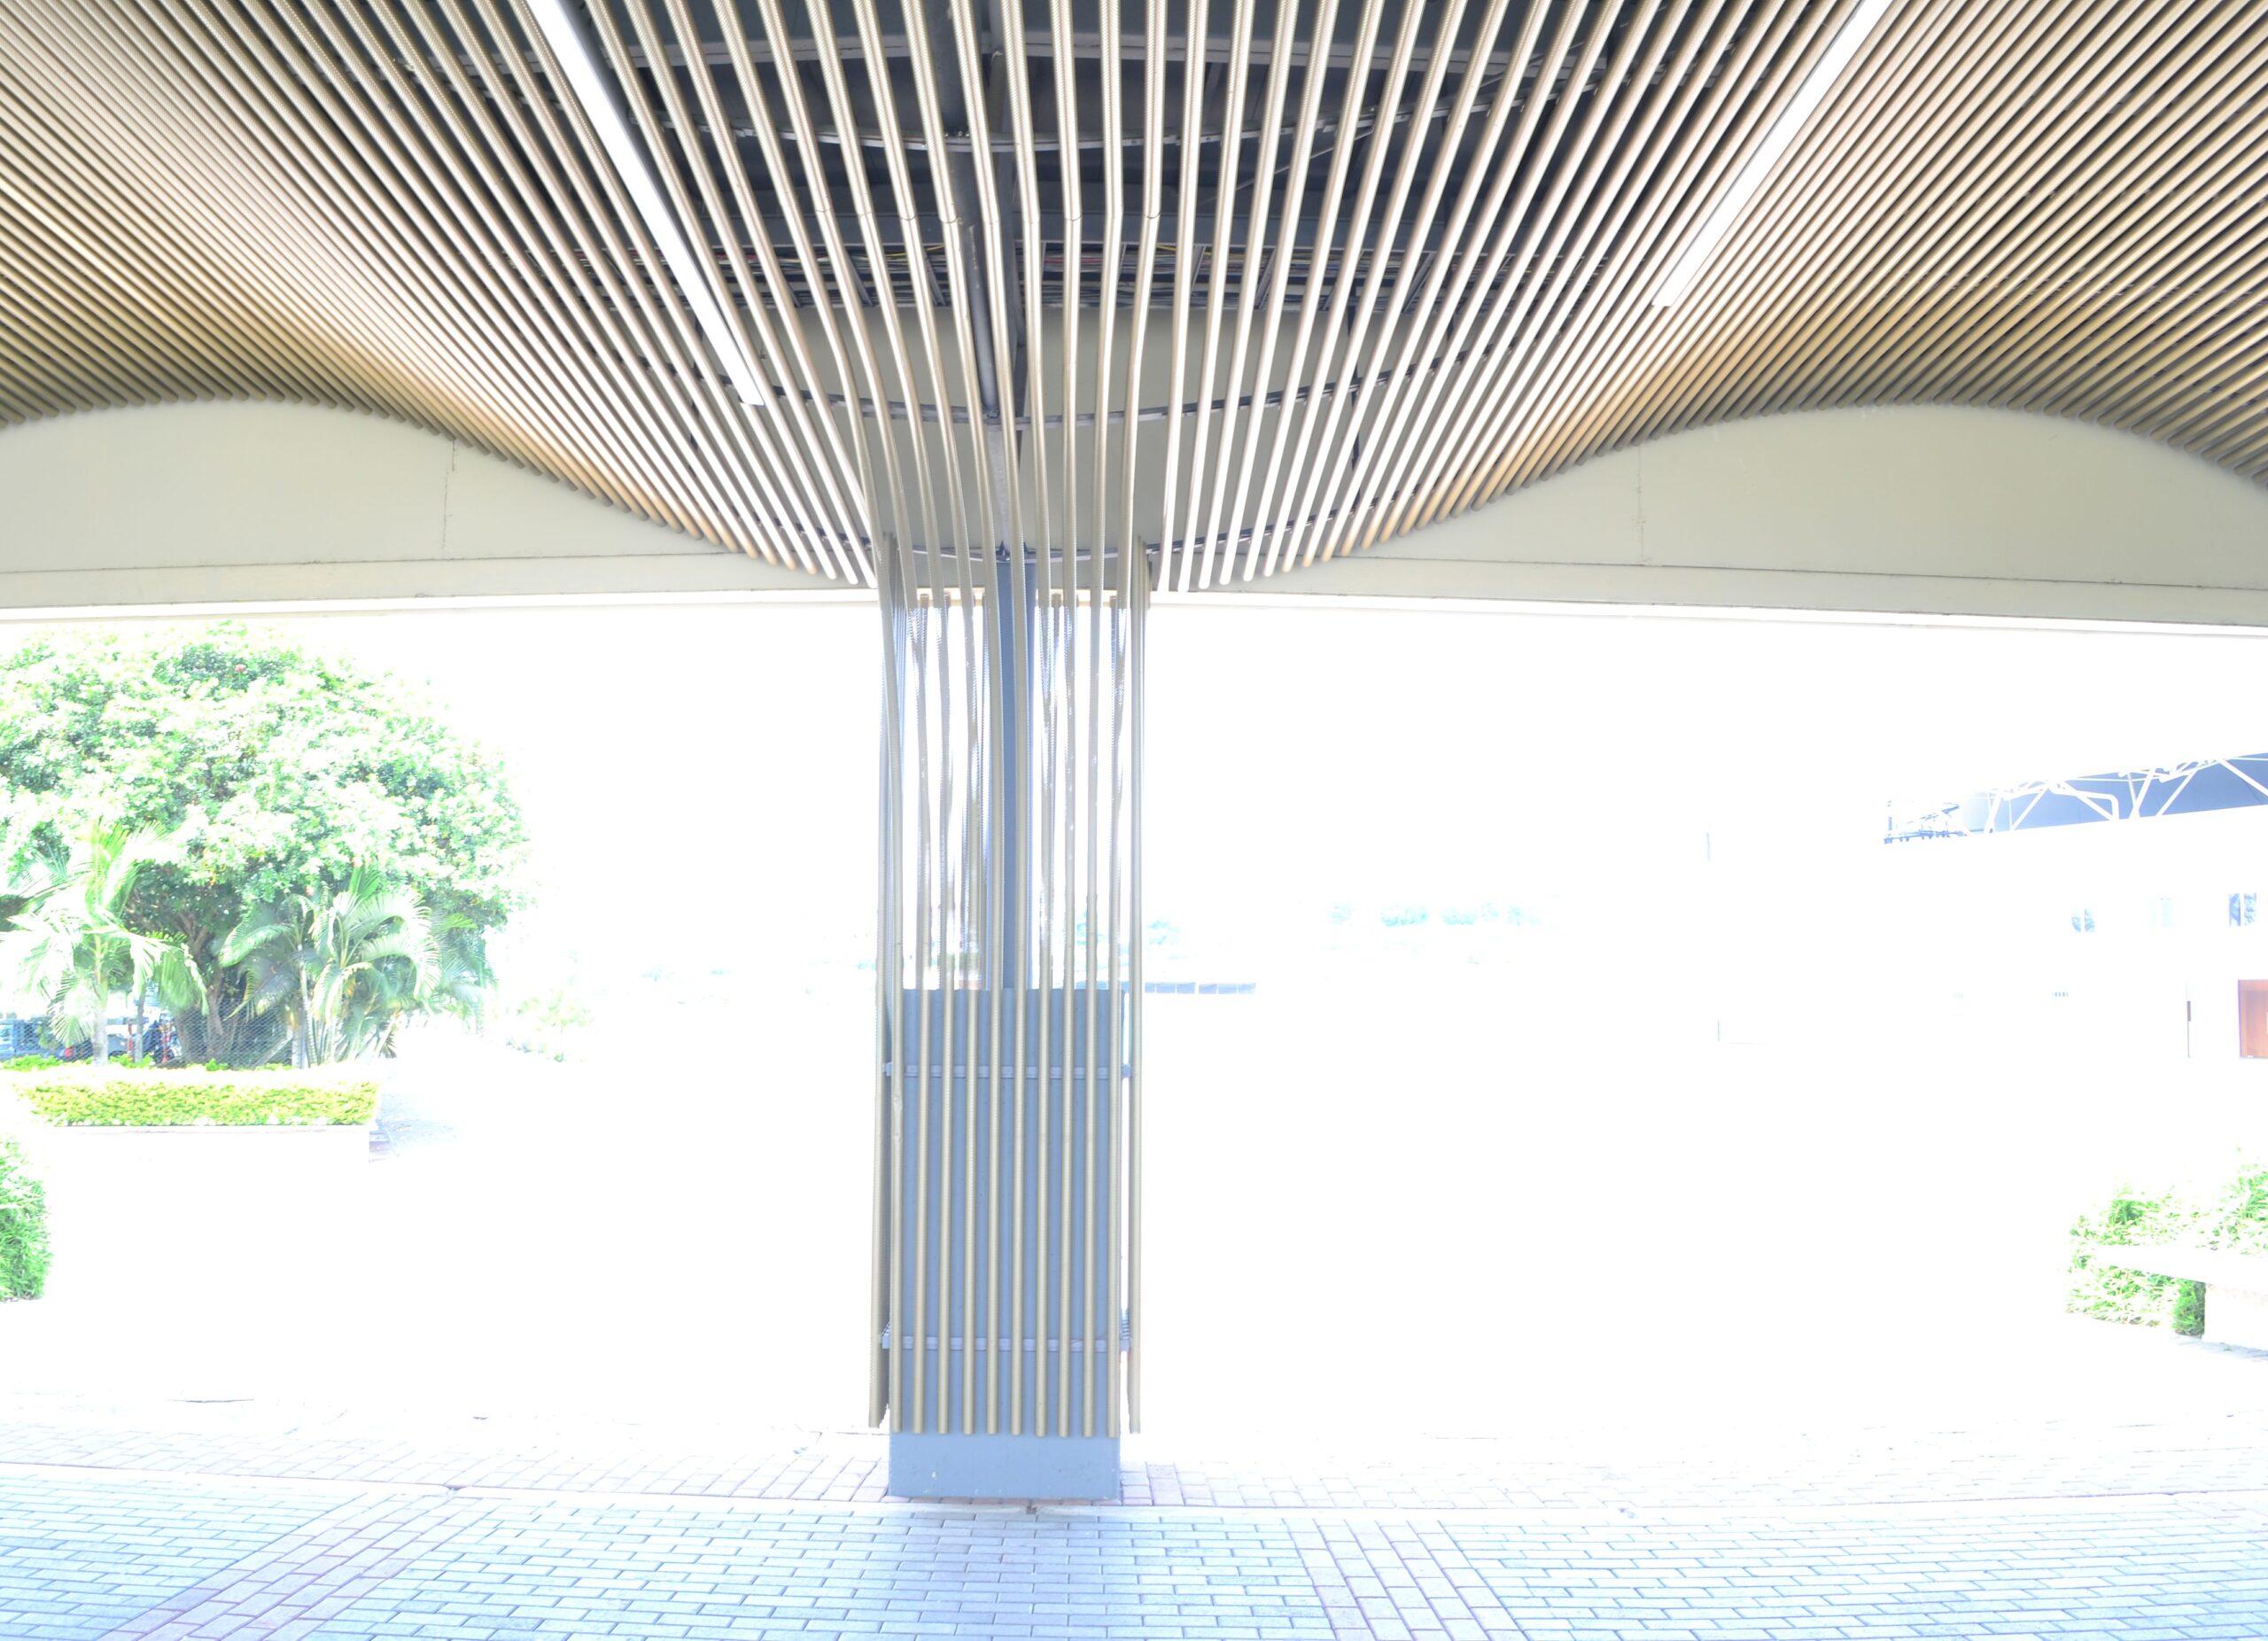 Centro de Convenciones – Expofuturo- Pereira enews imagenes imagen 3783 scaled